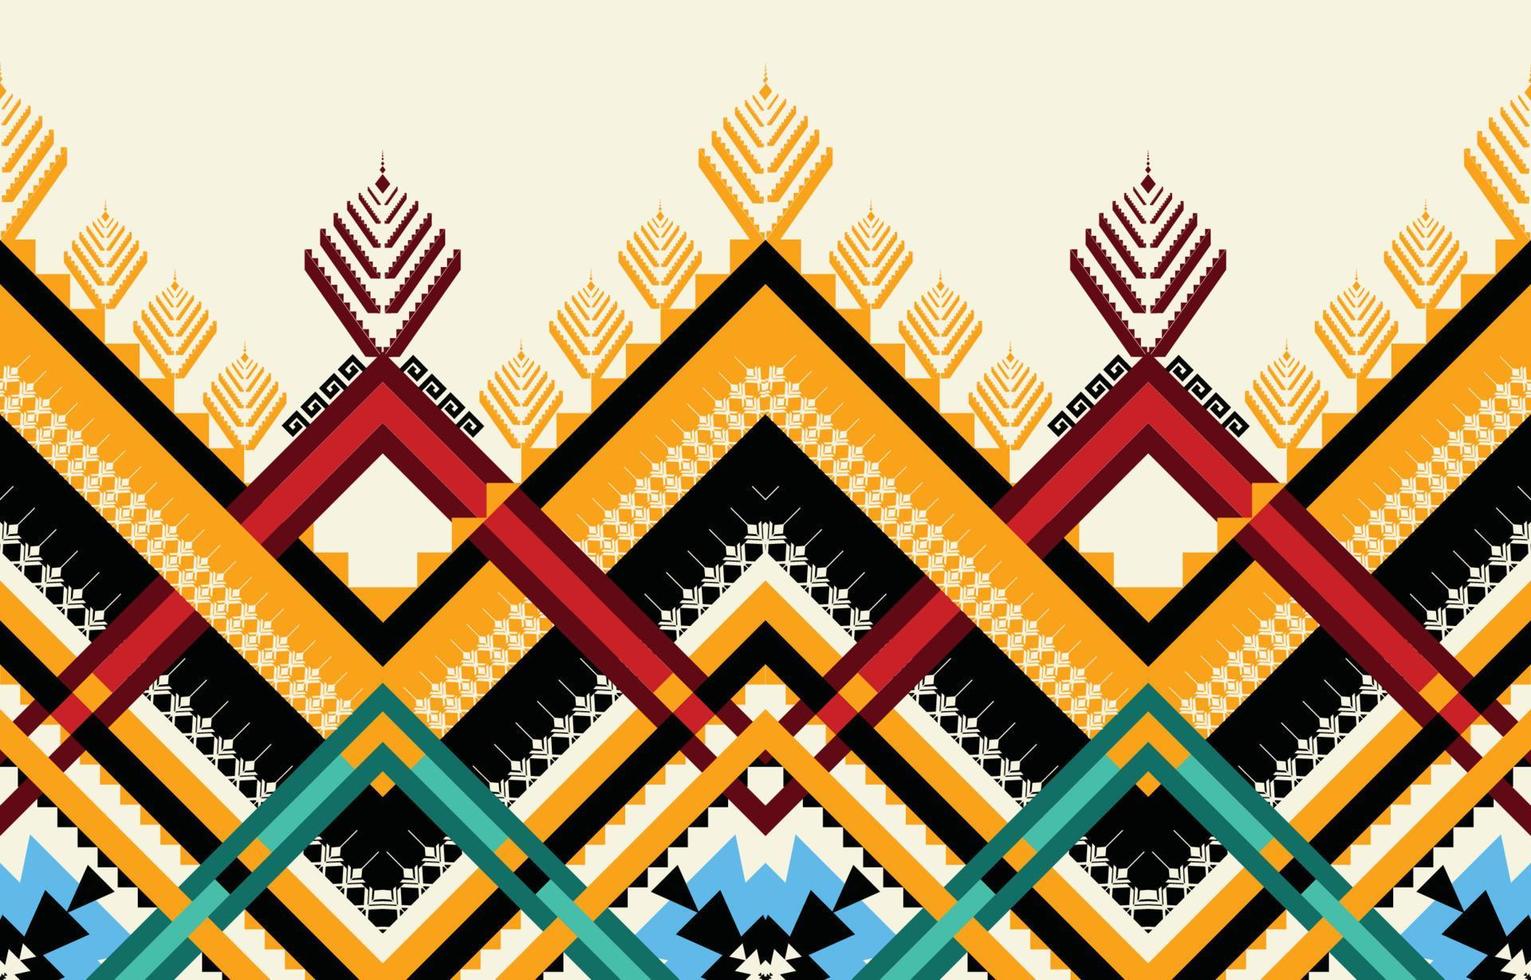 abstrakt etnisk geometrisk sömlös mönster vektor. afrikansk arab amerikan aztec motiv mönster. vektor element designad för bakgrund, tapet, skriva ut, omslag, kakel, tyg mönster. vektor mönster.